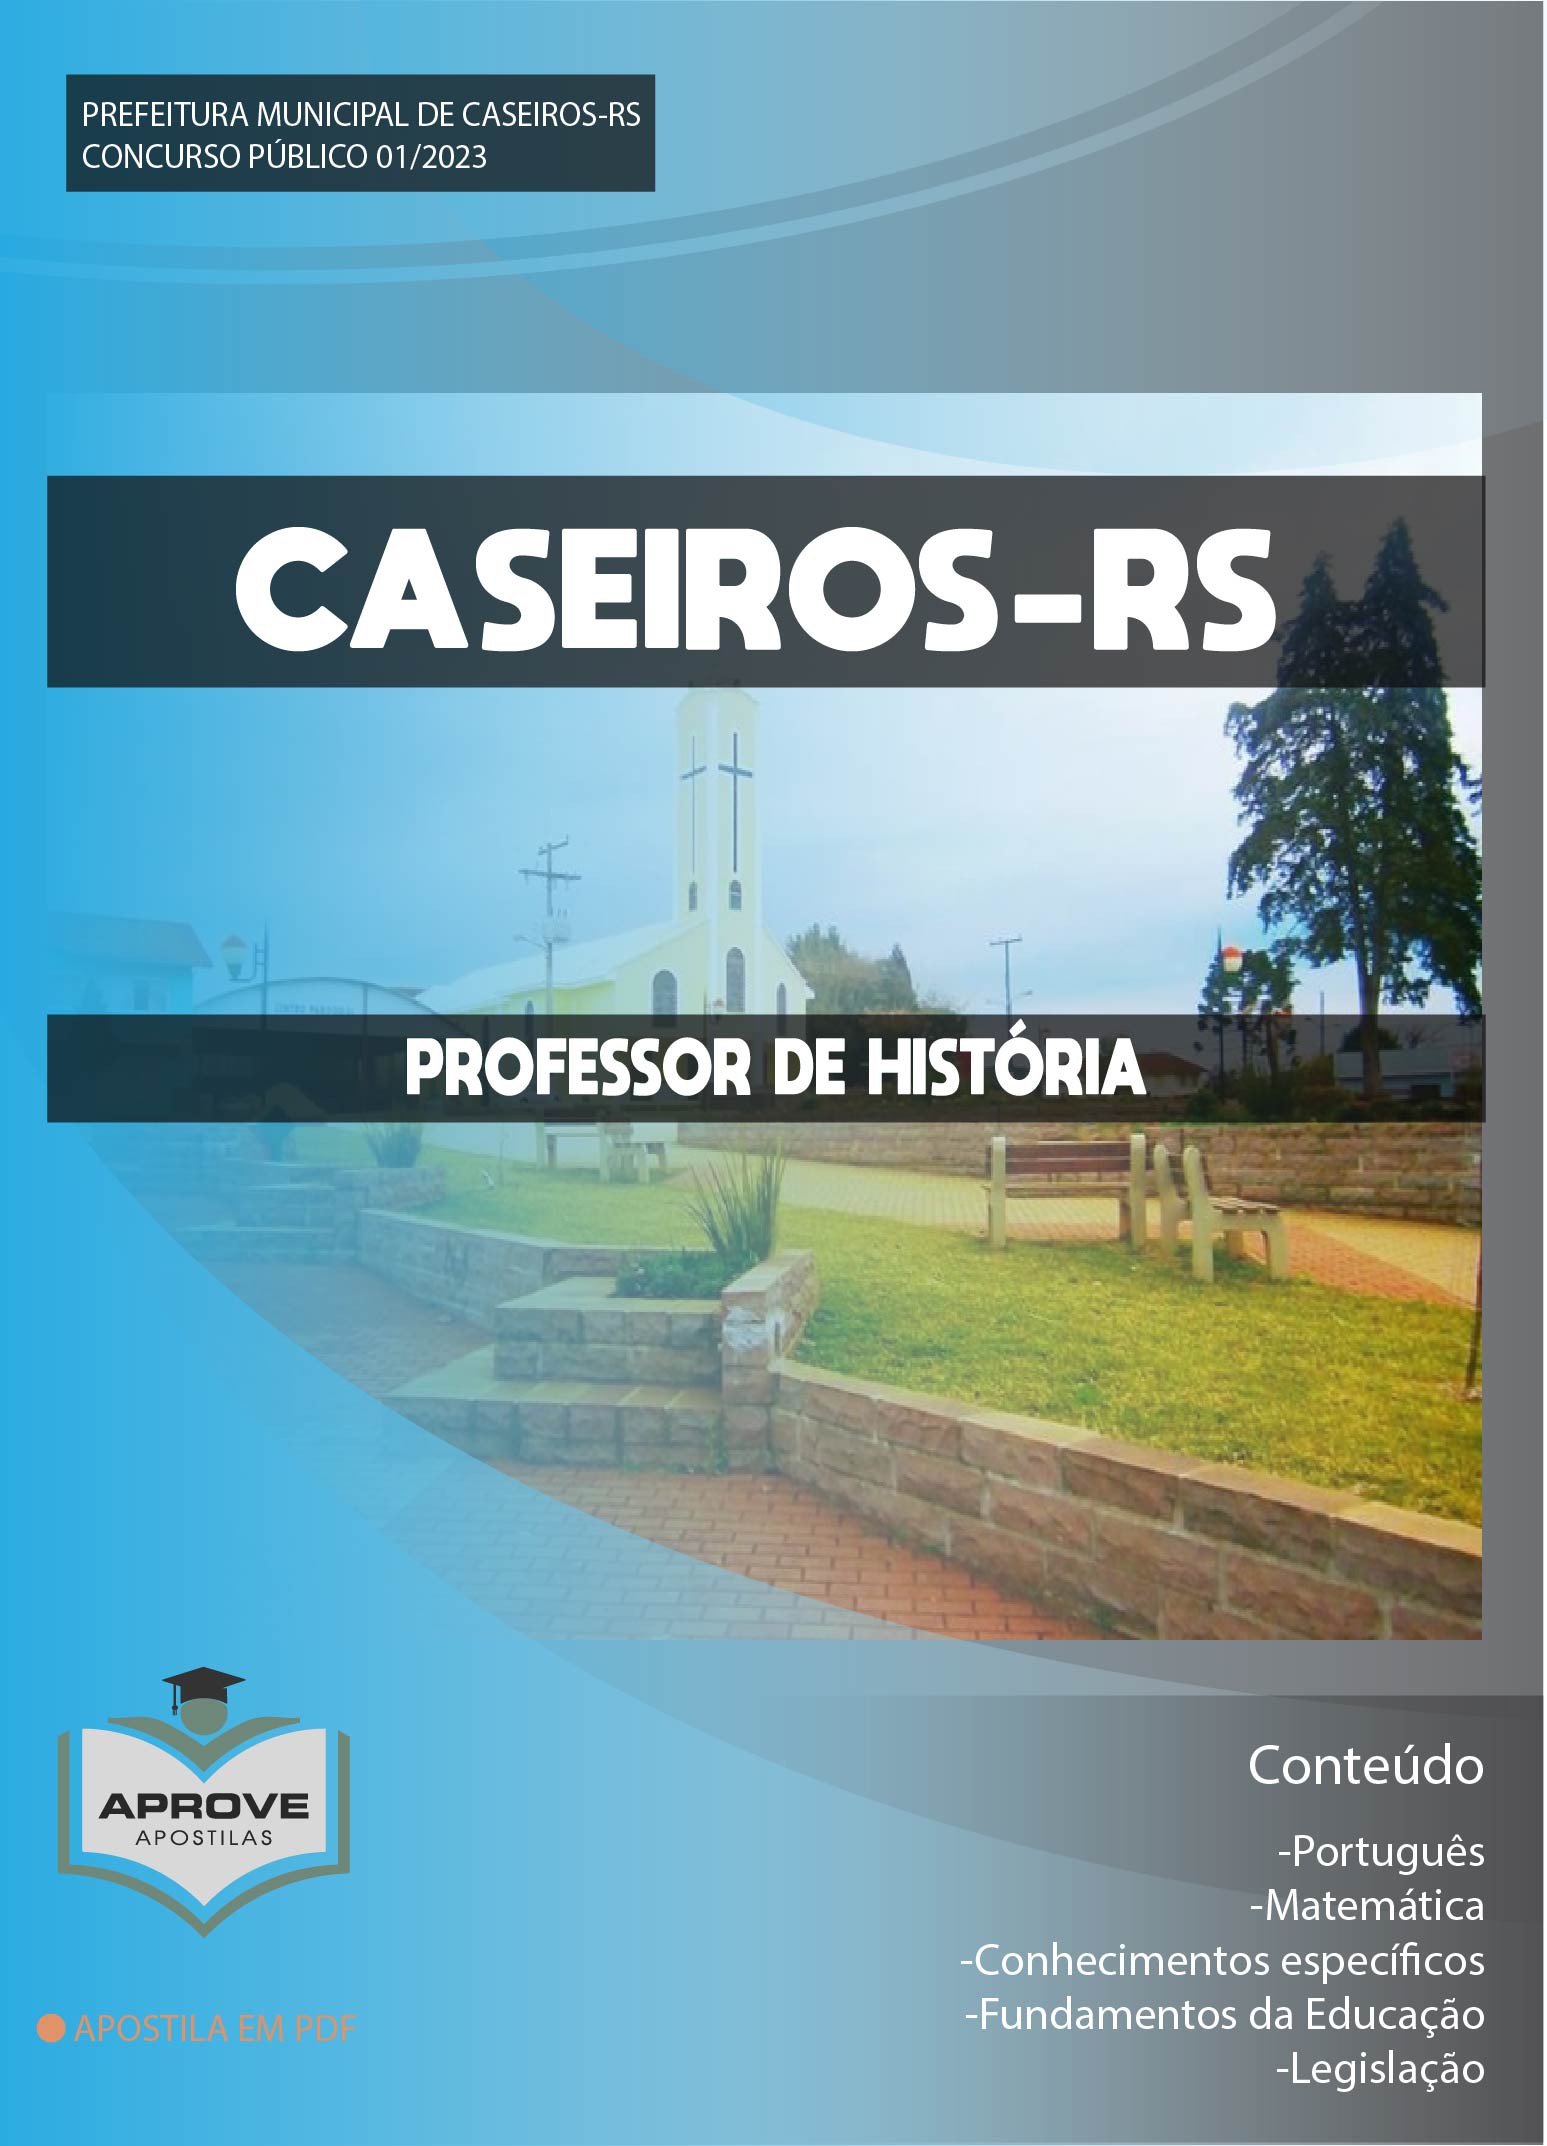 War Caseiro - Manual, PDF